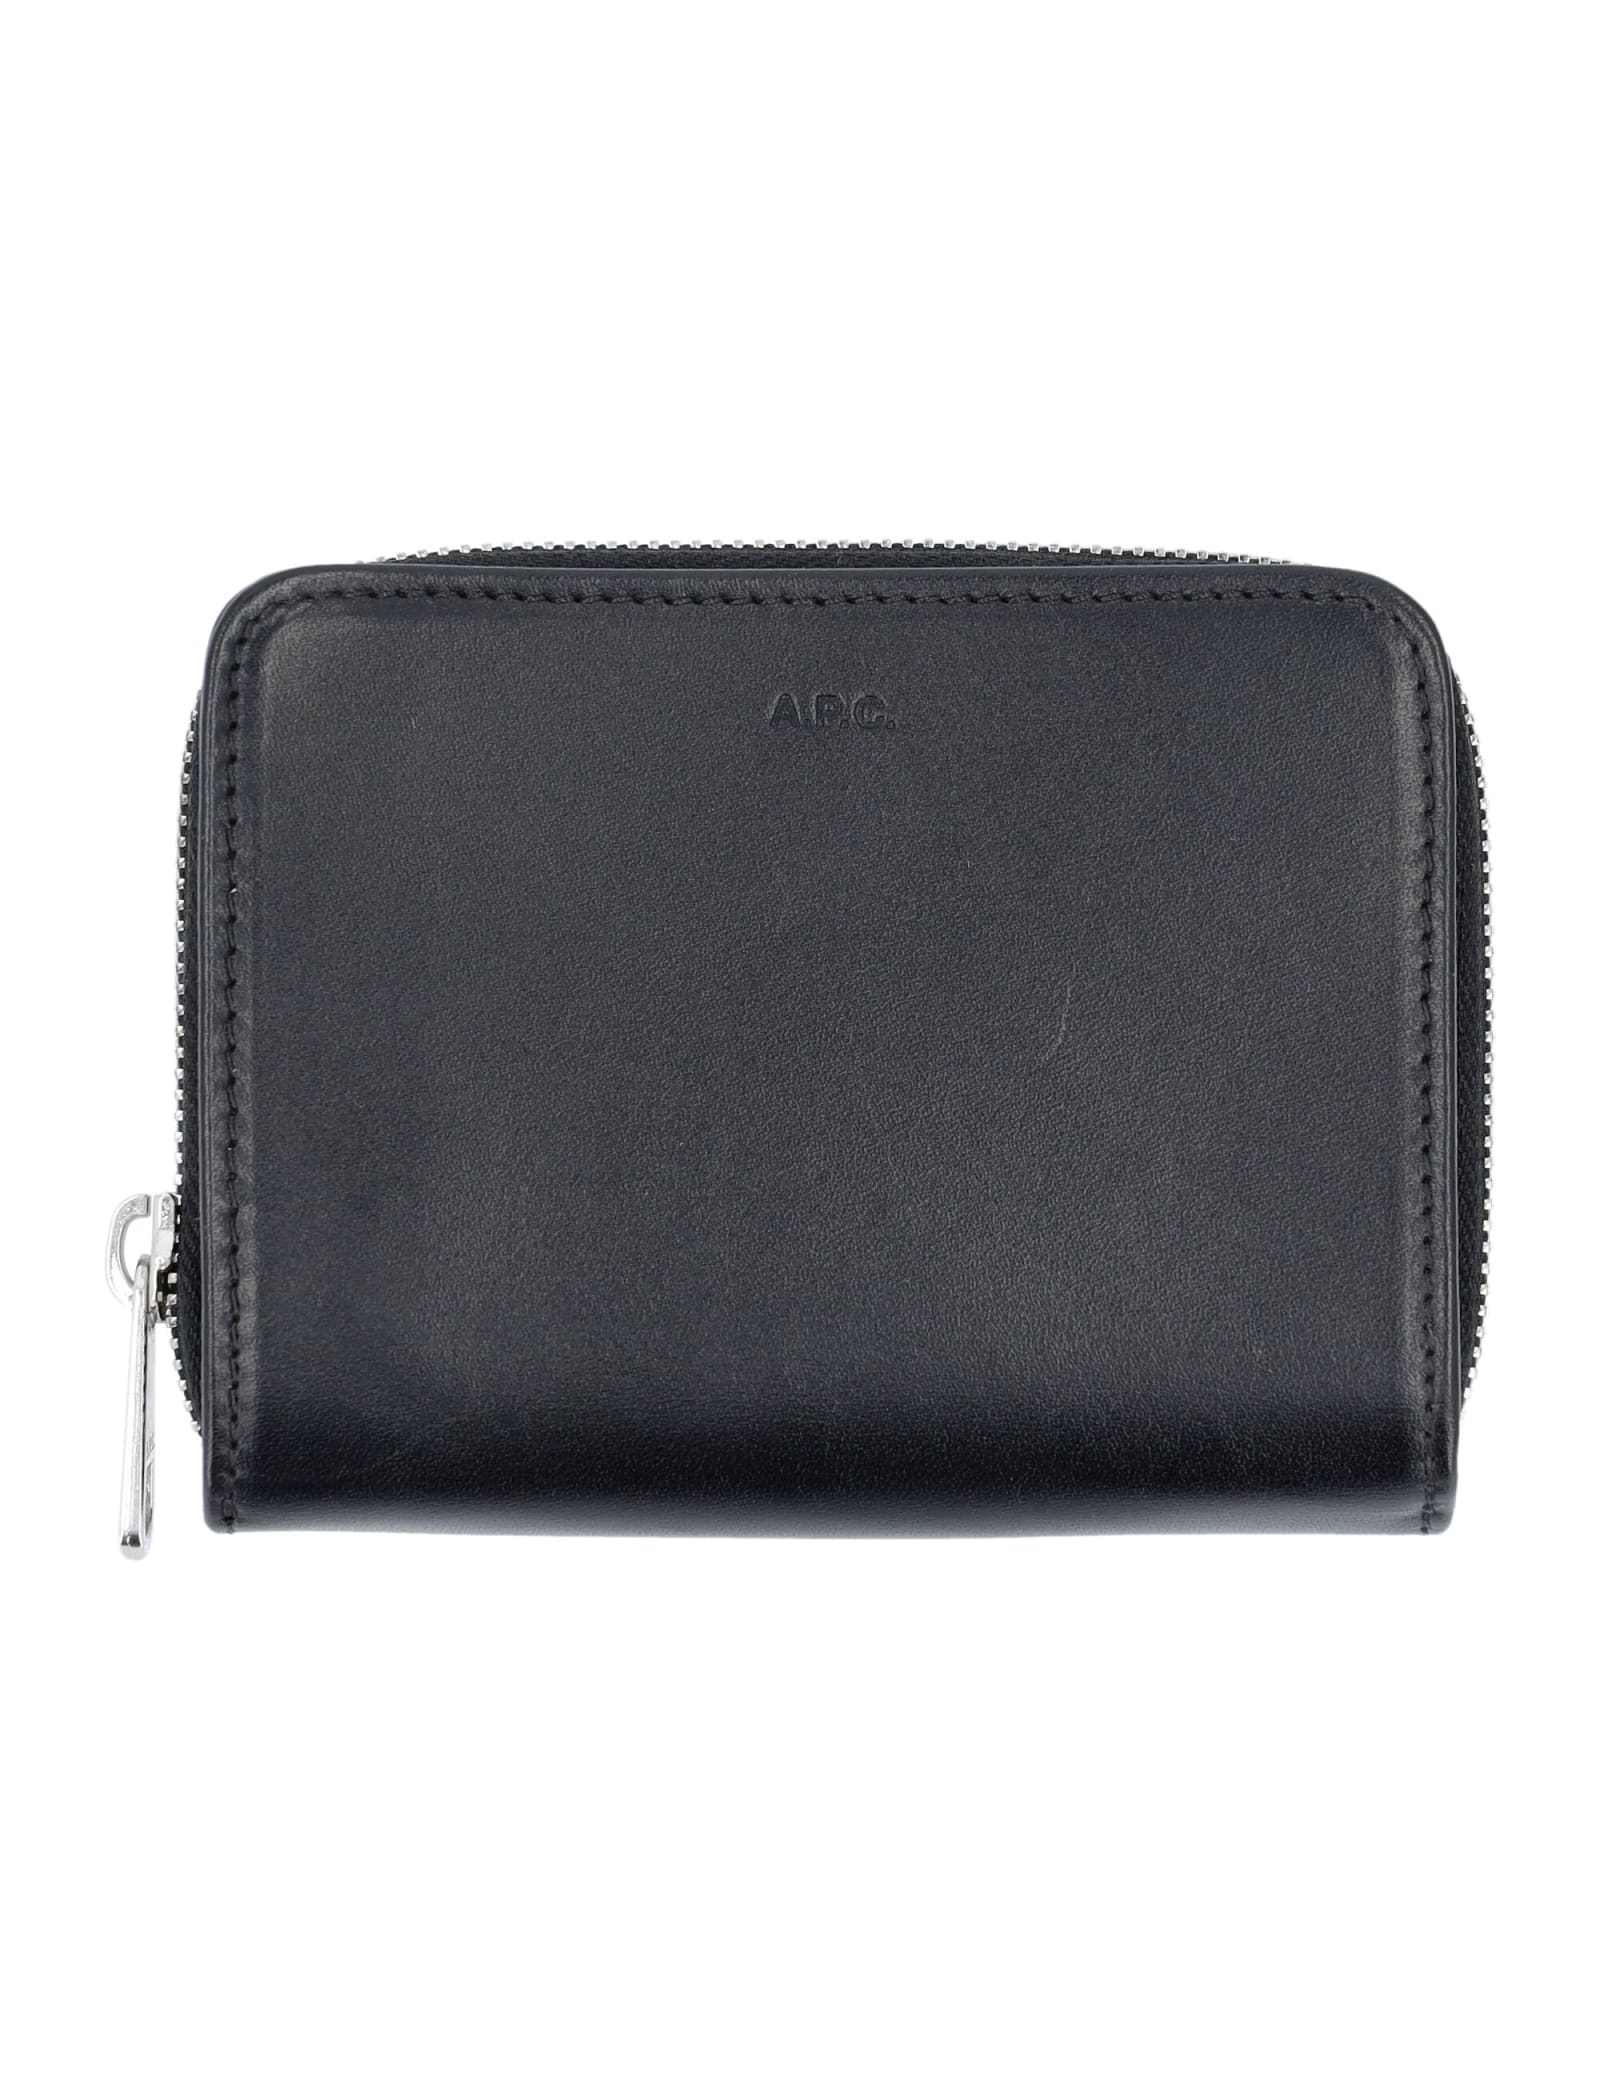 Apc Emmanuel Compact Wallet In Black